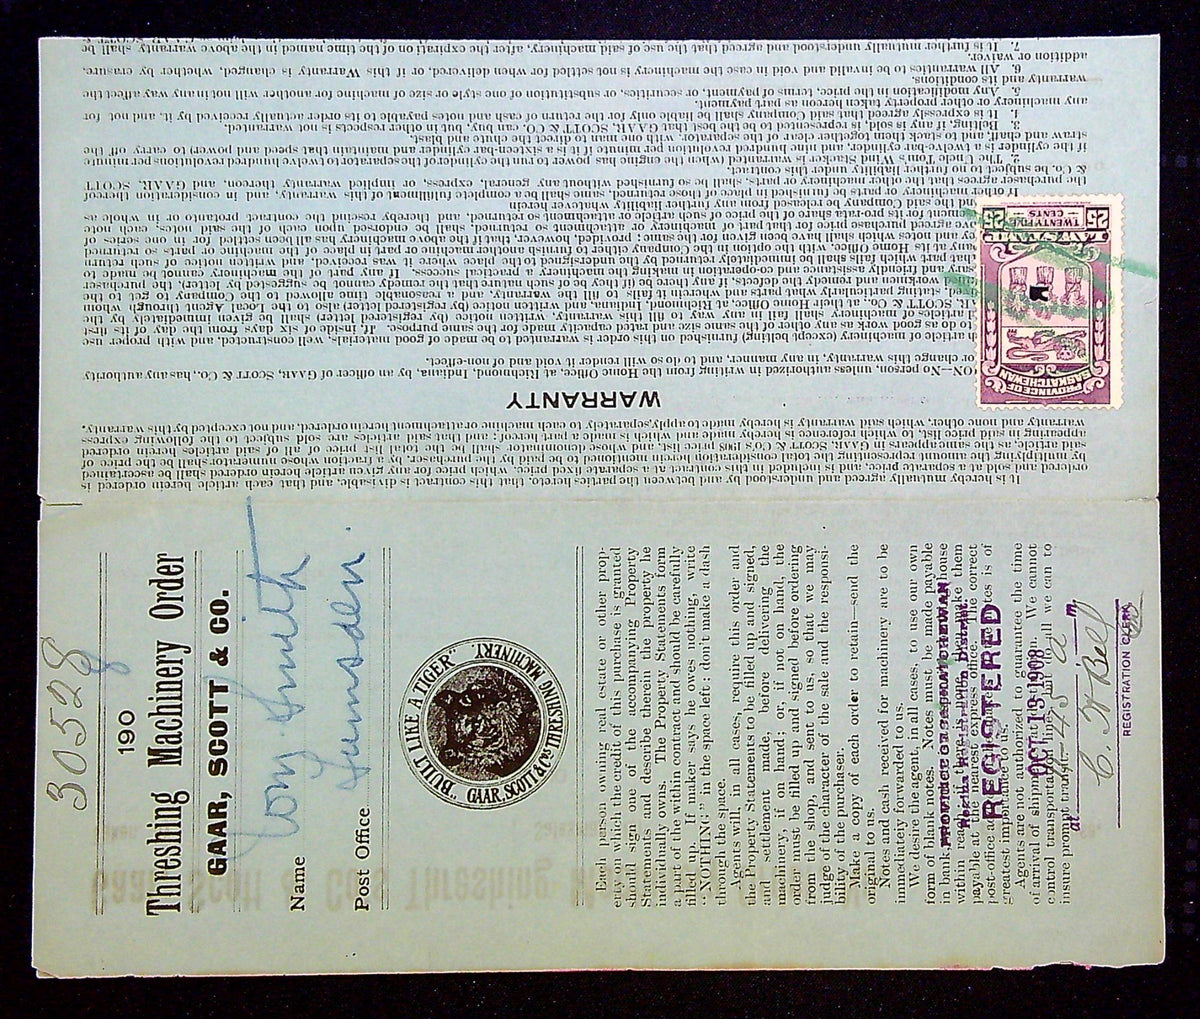 0036SL2202 - SL36 - Saskatchewan Document